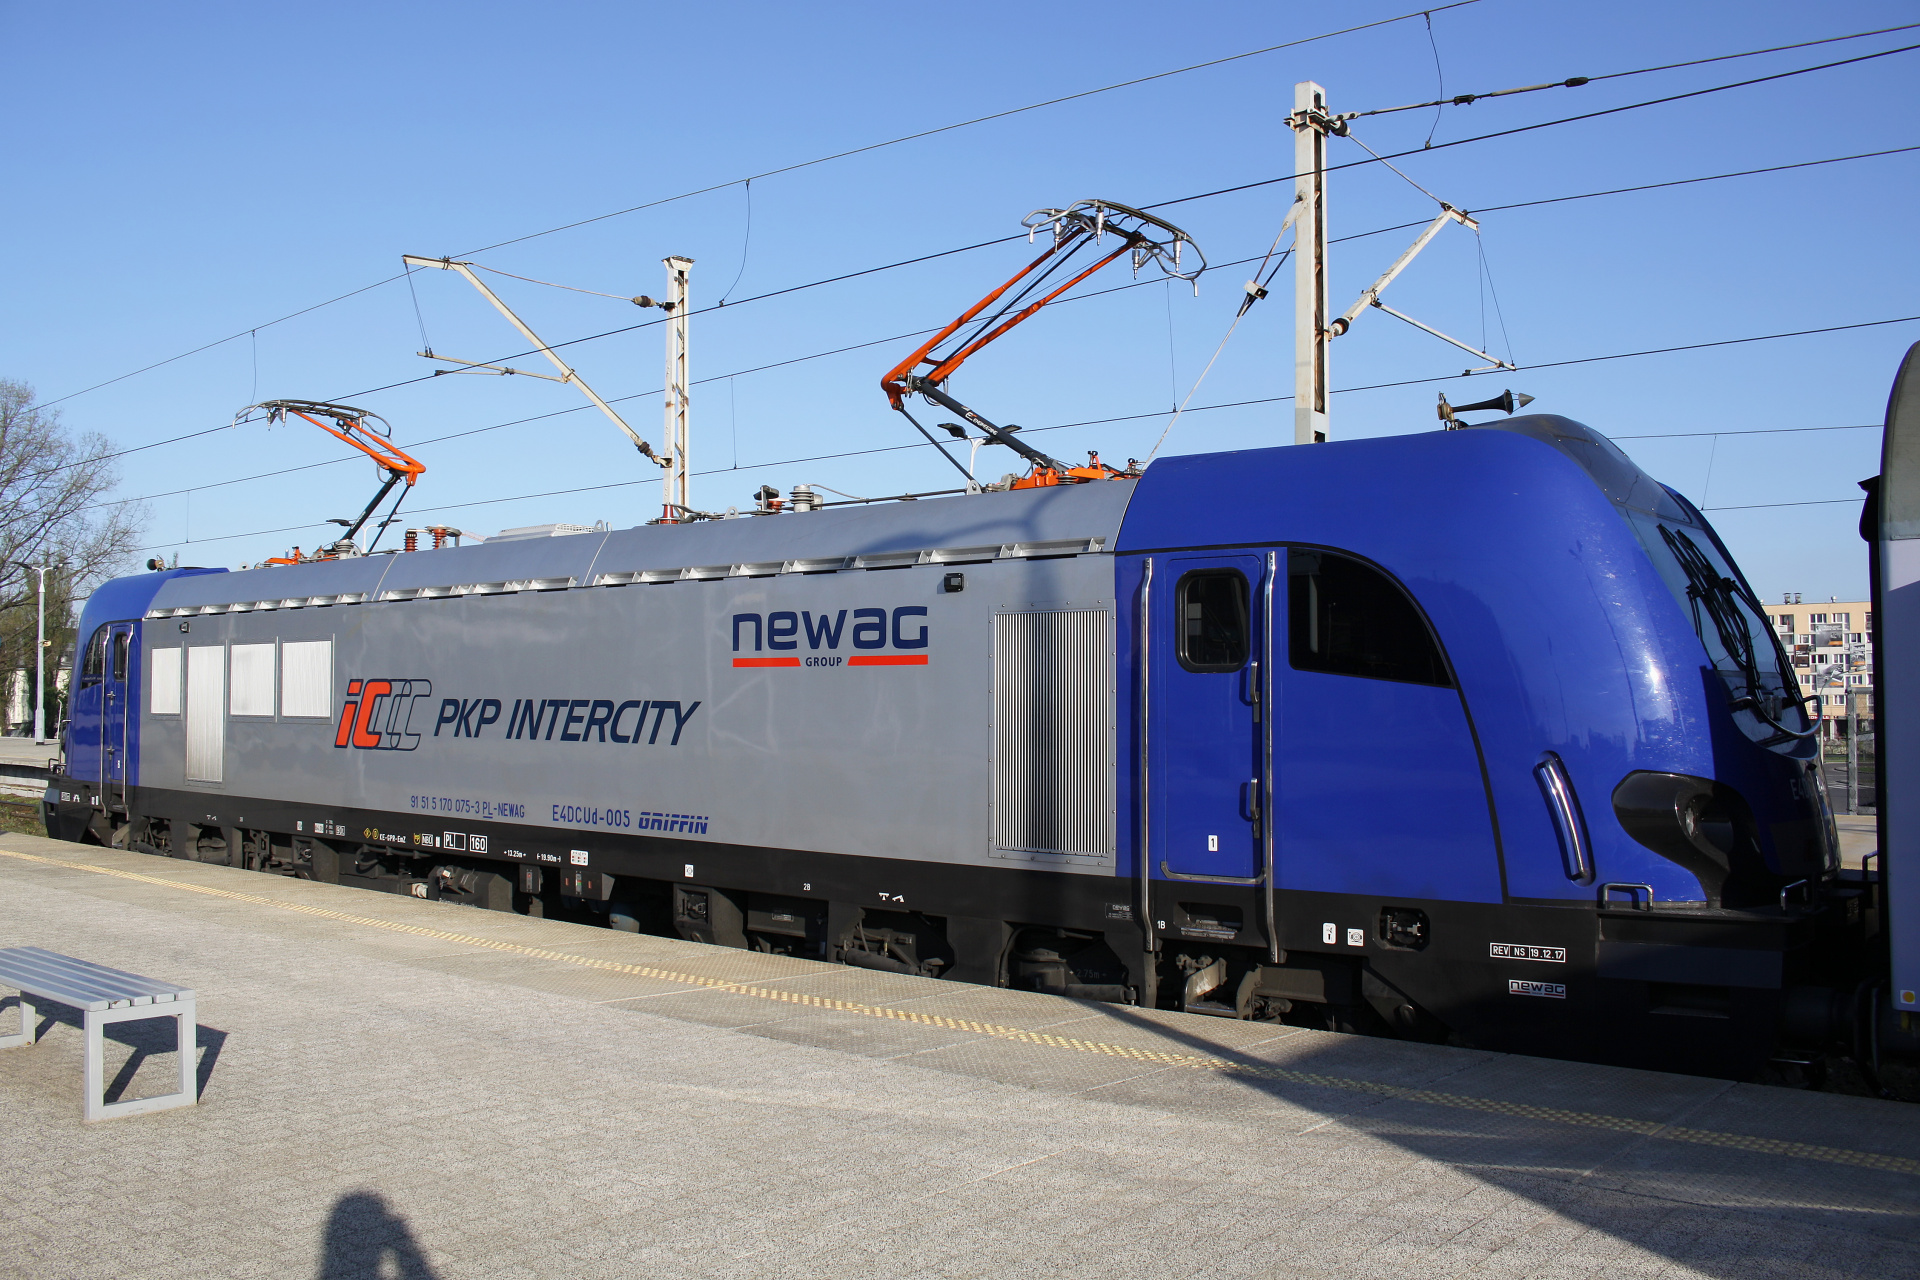 E4DCUd-005 (Pojazdy » Pociągi i lokomotywy » Newag Griffin)